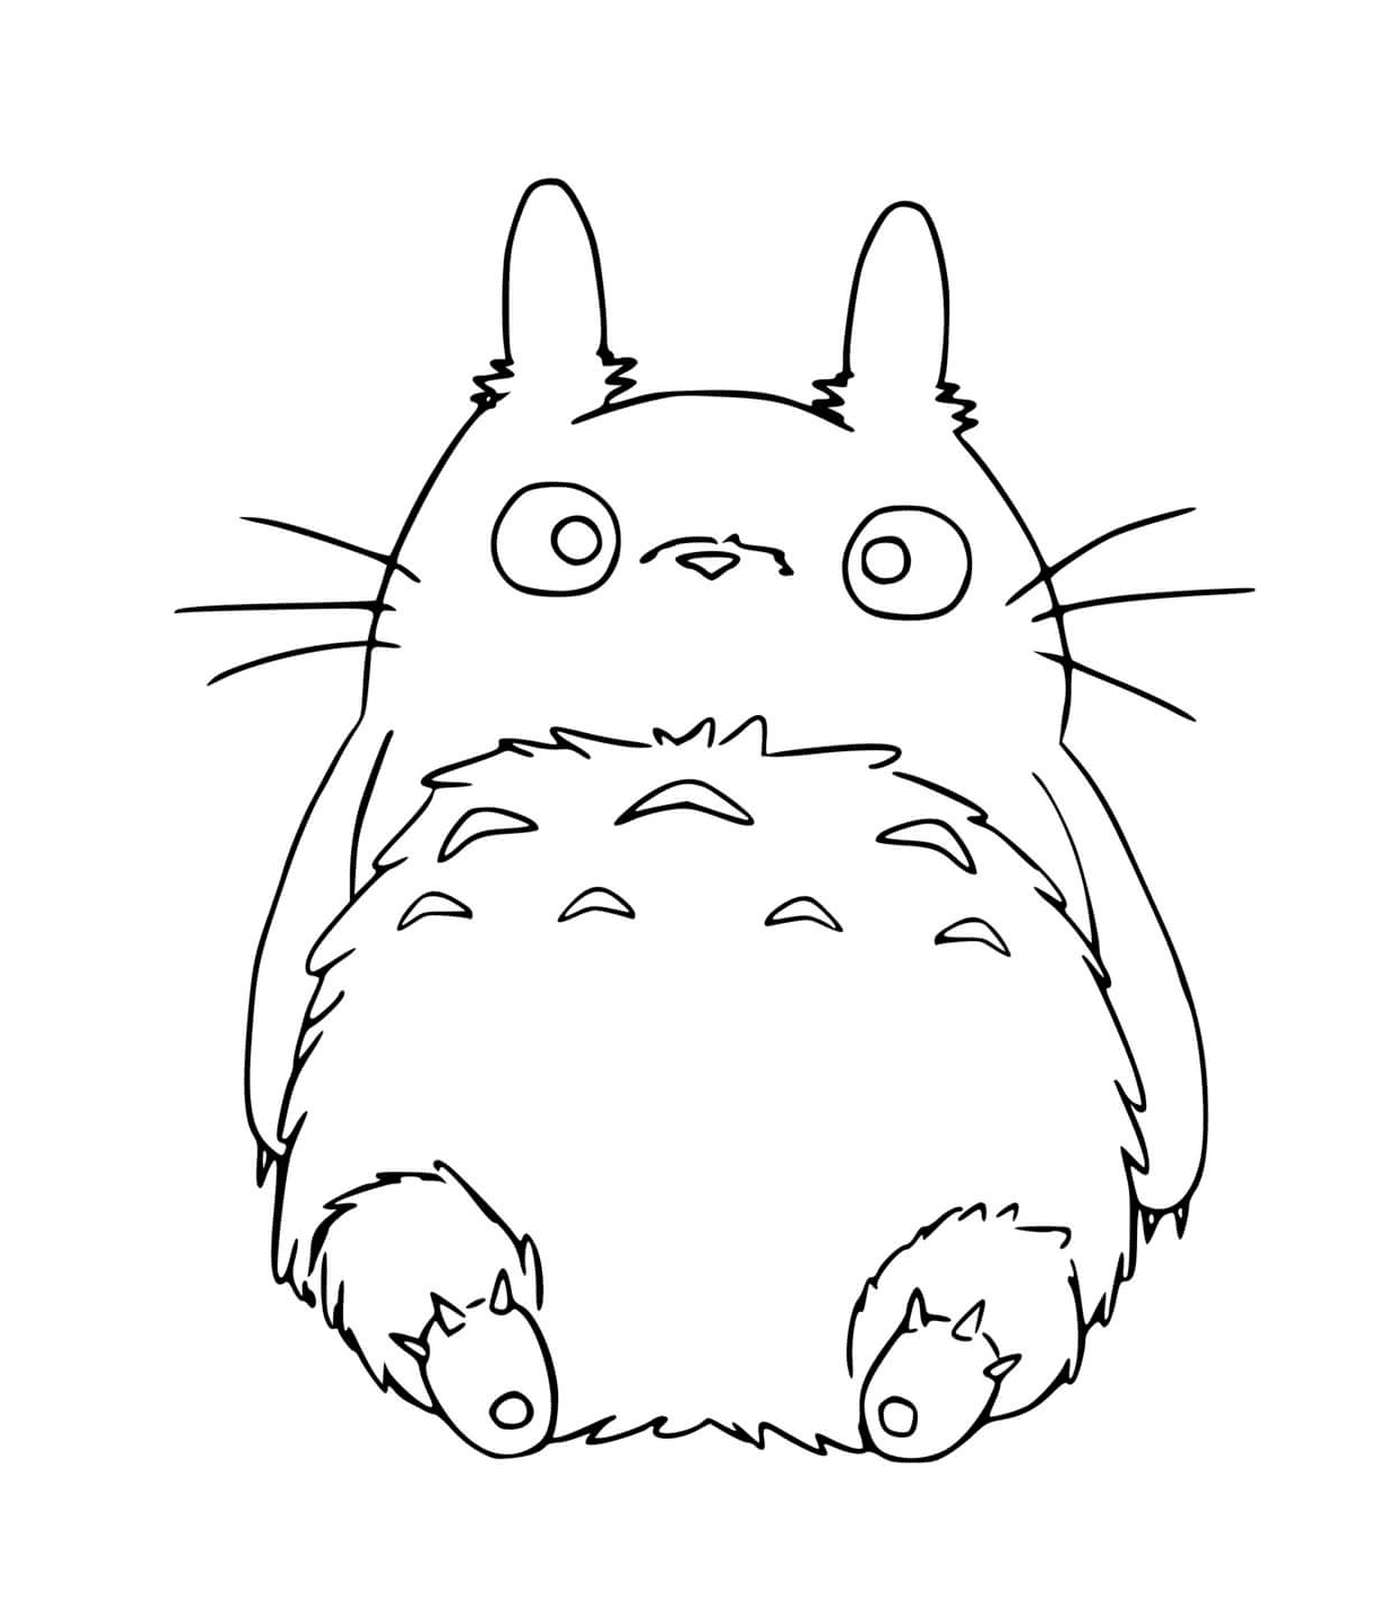   Totoro assis par terre 